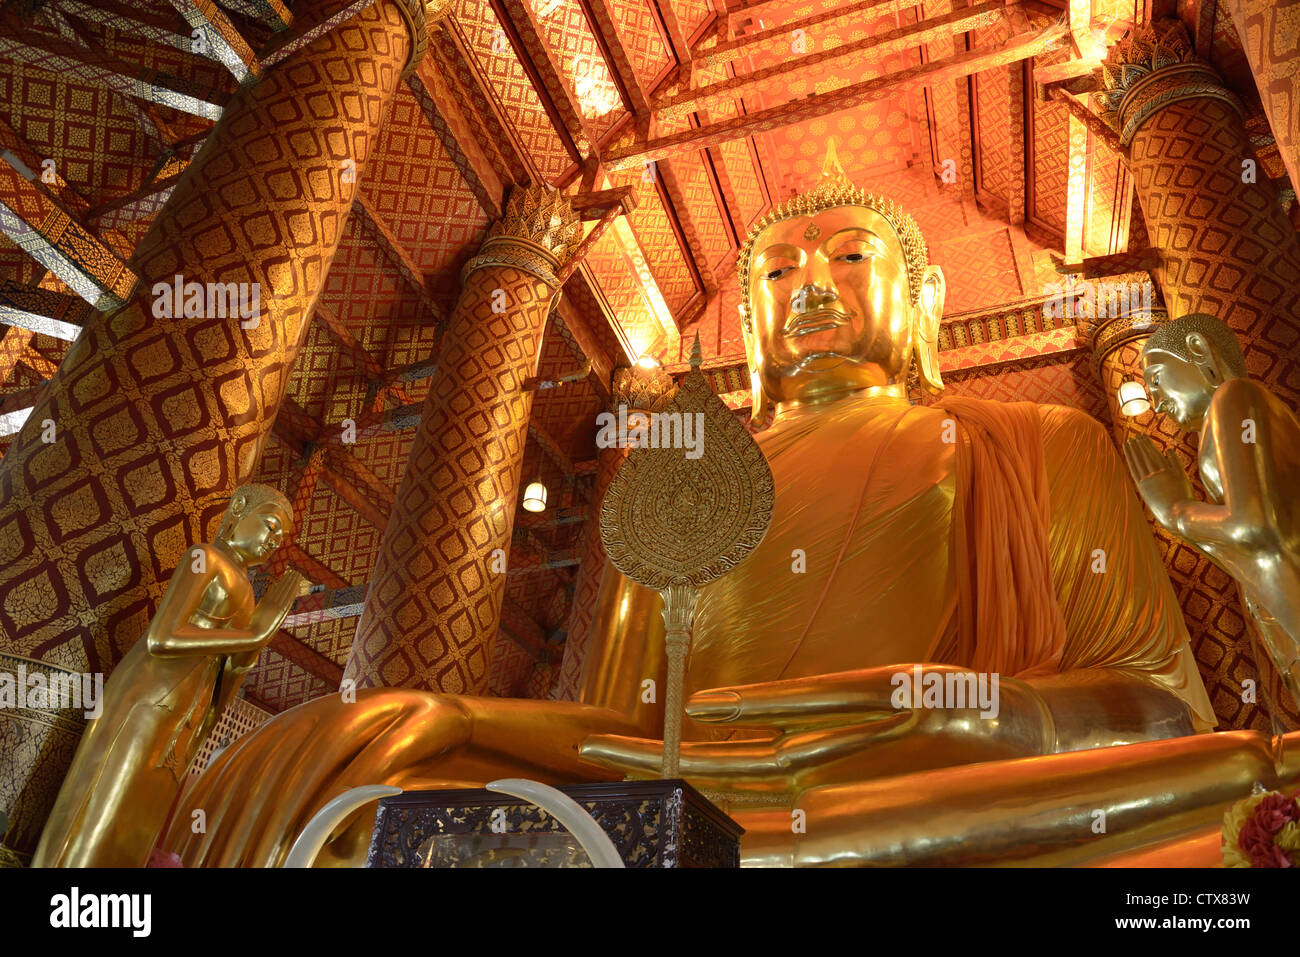 The big Buddha statue in Wat Phananchoeng where is in Ayuttaya,Thailand. Stock Photo